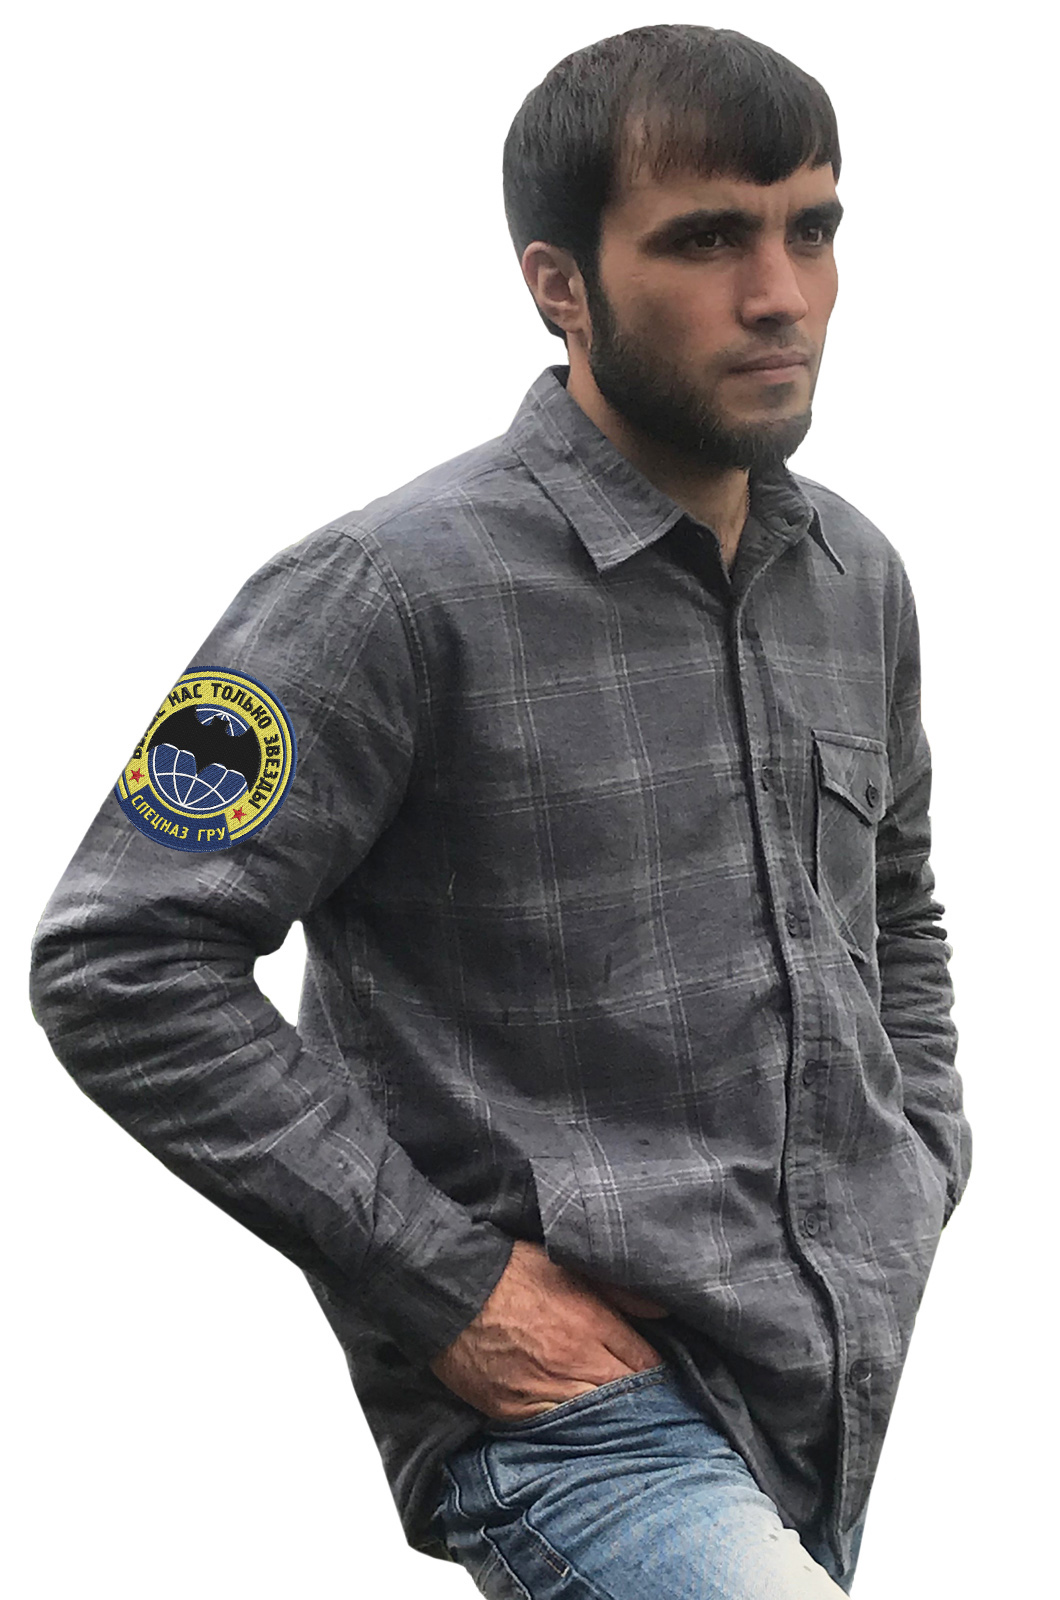 Рубашка с шевроном Спецназа ГРУ заказать оптом и в розницу